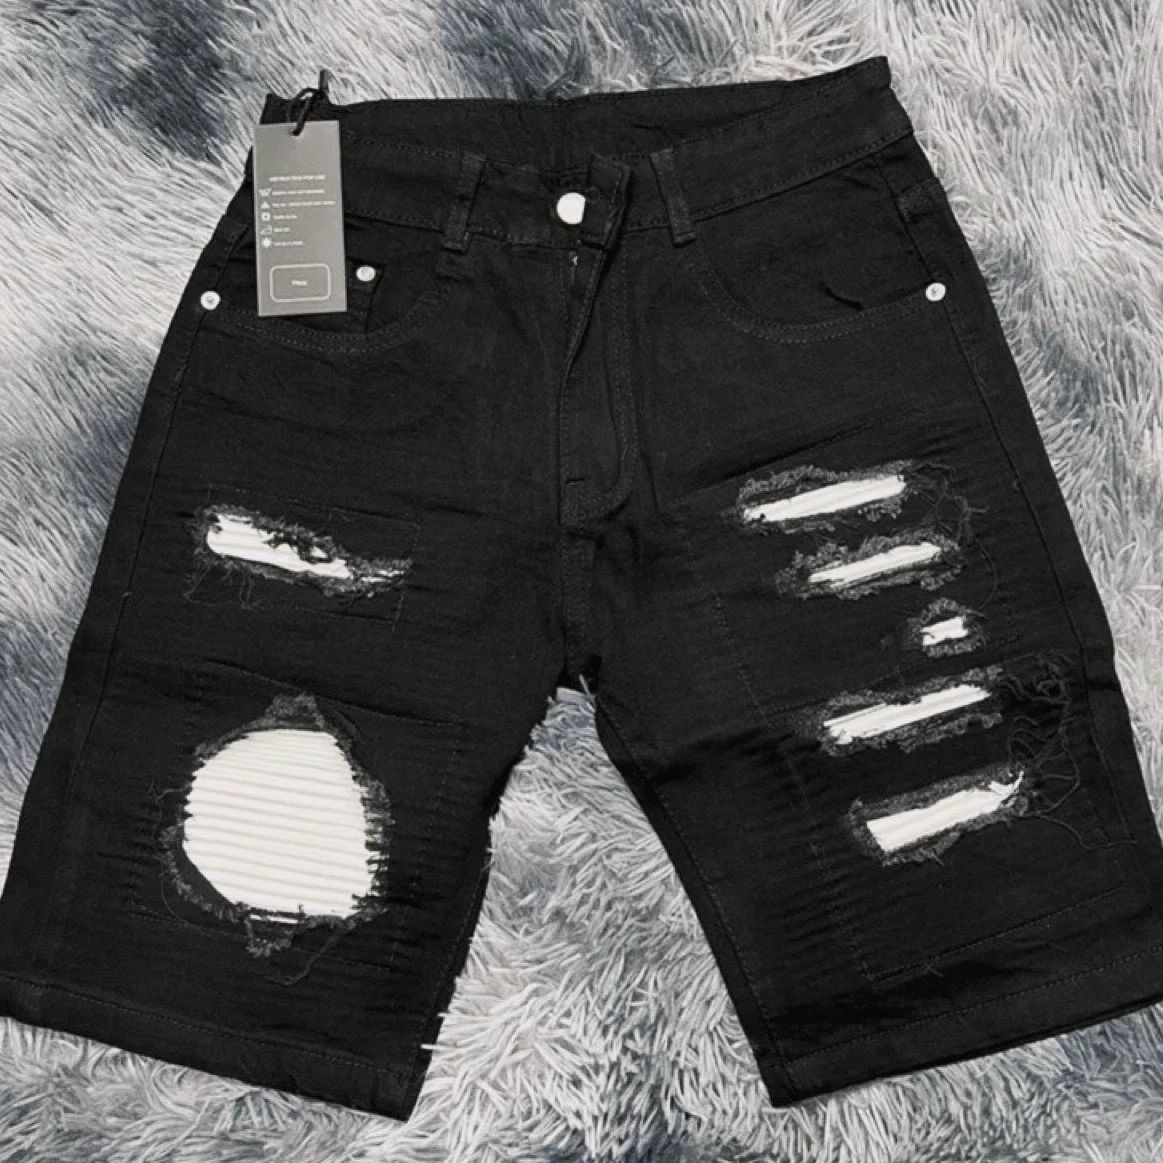 quần bò short jean nam ngắn đen rách vá đẹp mẫu mới hot trendchất jean co giãn bền màu giá tốt KAYSTORE